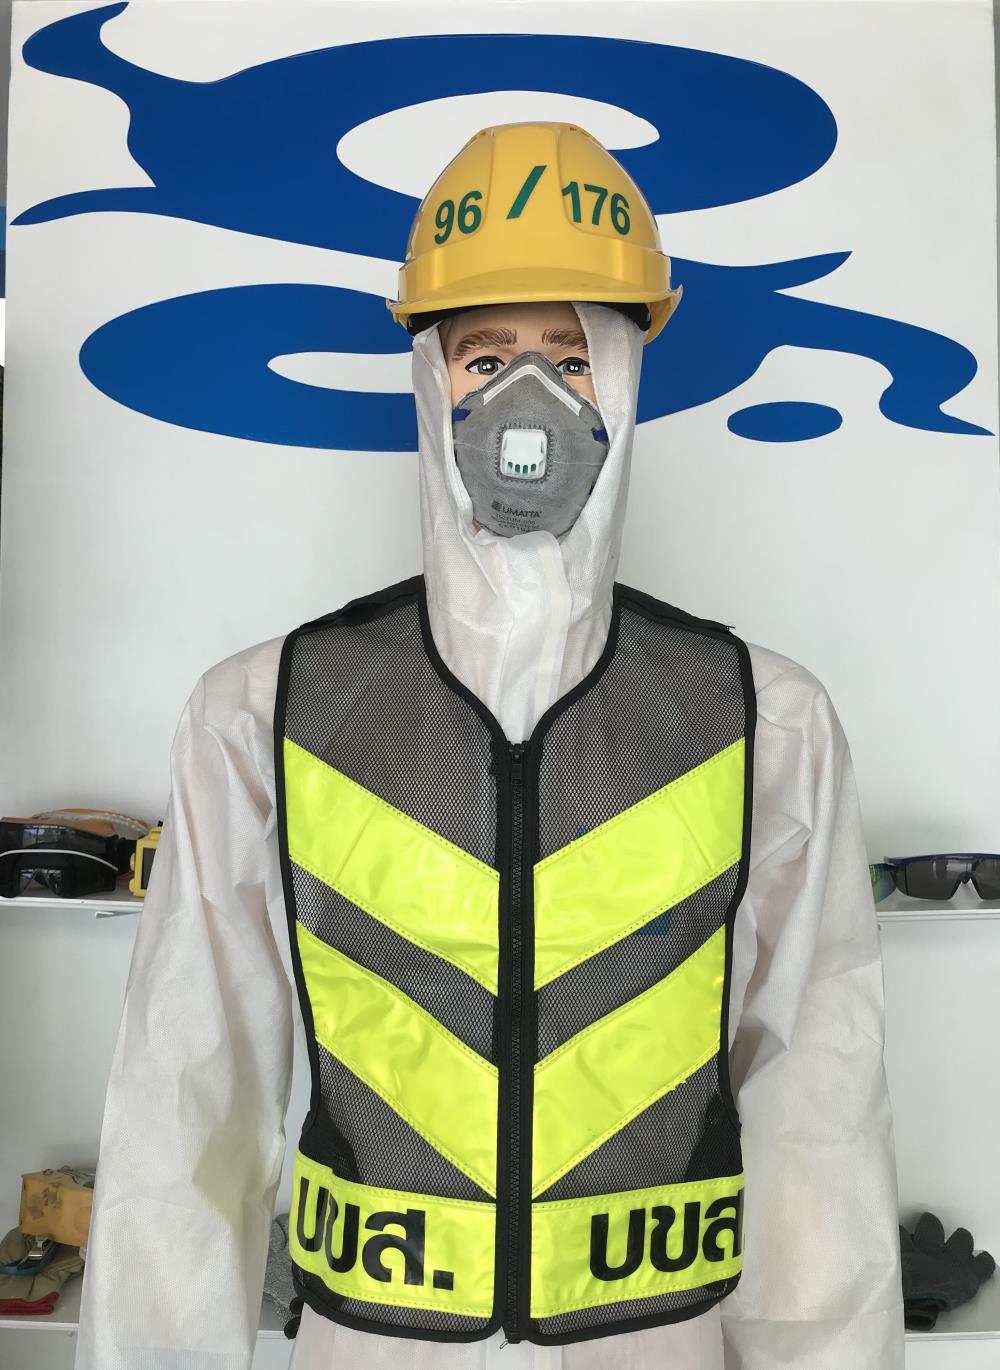 เสื้อสะท้อนแสง,เสื้อสะท้อนแสง,DINO,Plant and Facility Equipment/Safety Equipment/Reflective Safety Equipment